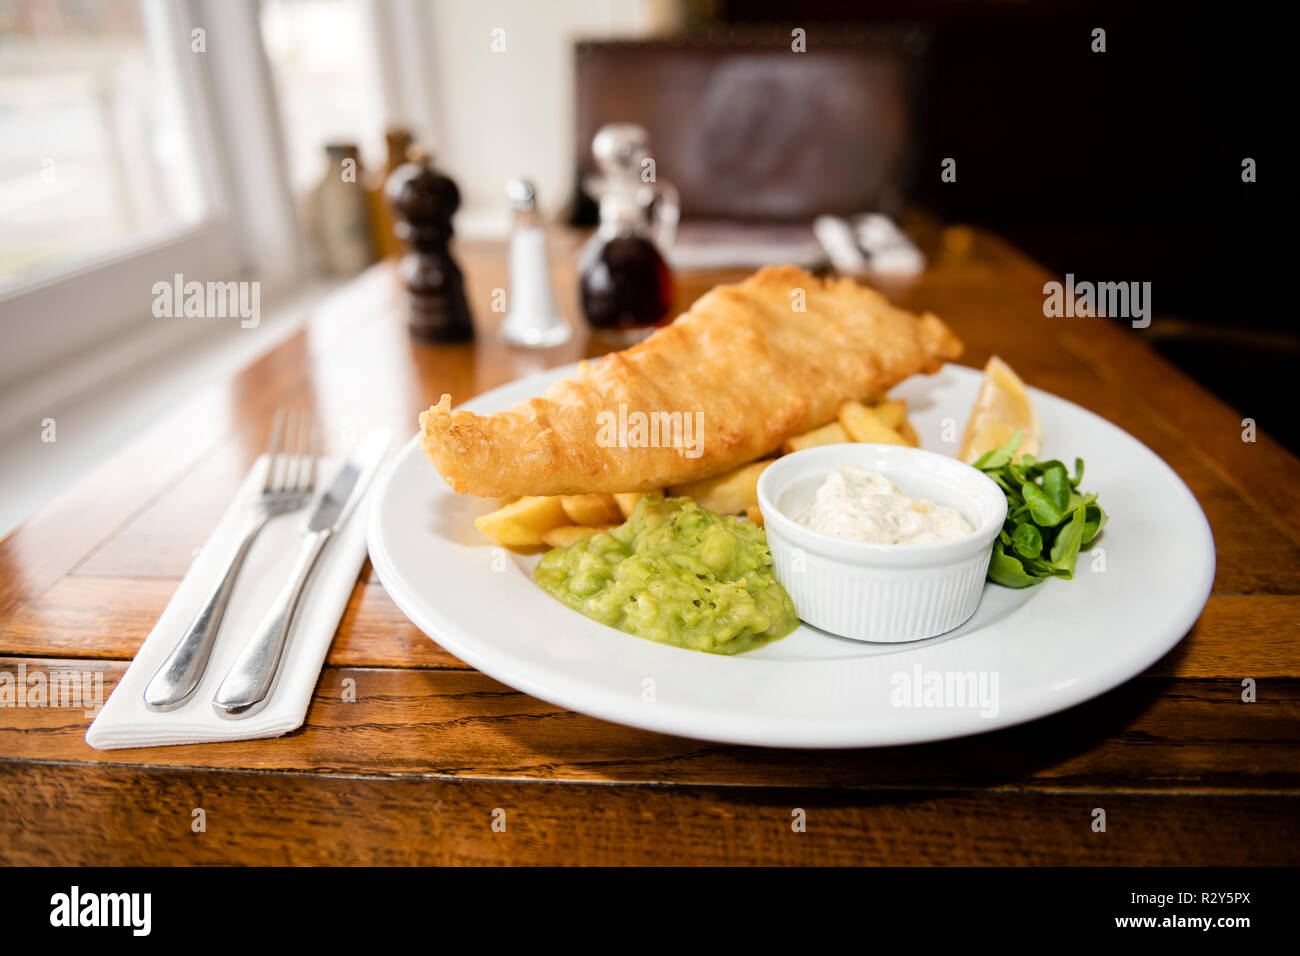 Piatti da pub, UK. Fish & Chips per il pranzo in una locanda. Foto Stock